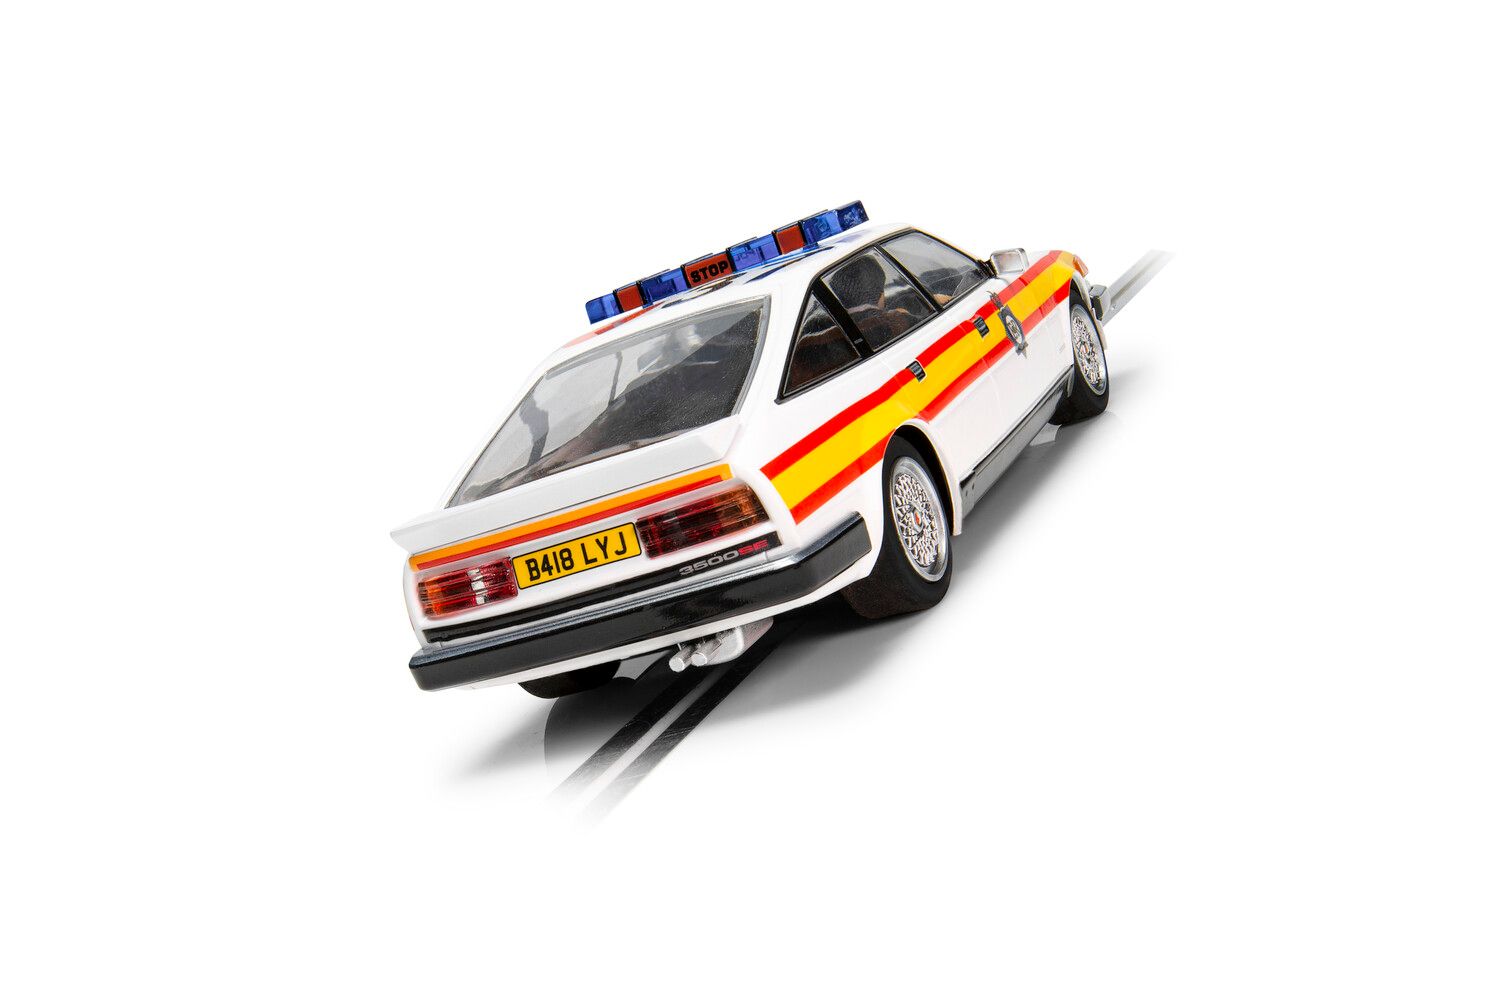 C4342 Rover SD1 - Police Edition